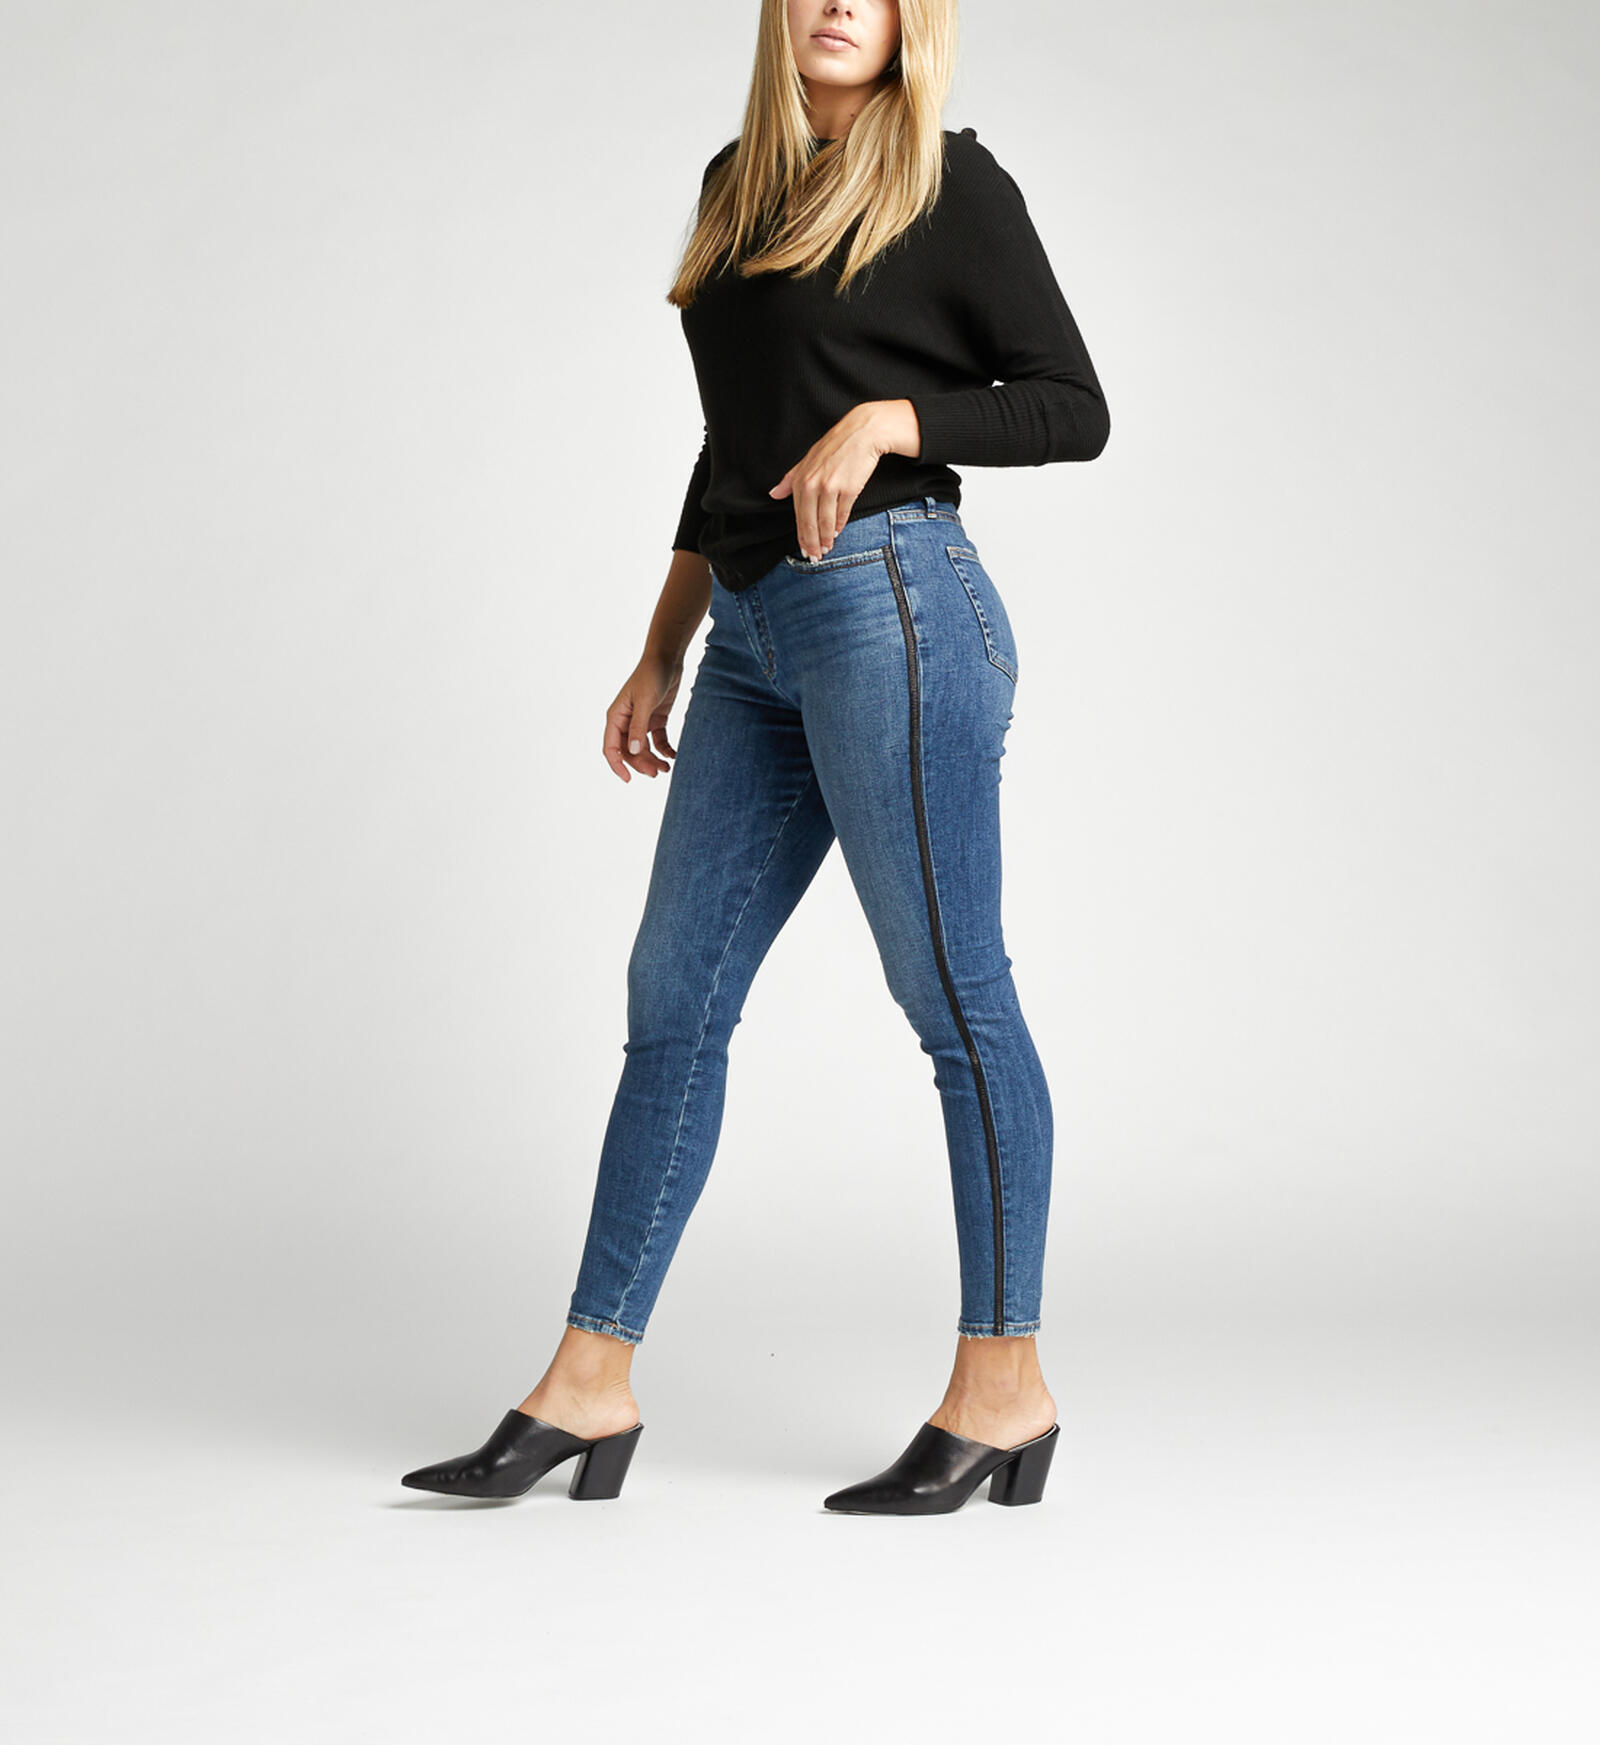 SELONE Jeans for Women High Waist Baggy High Waist High Rise Denim